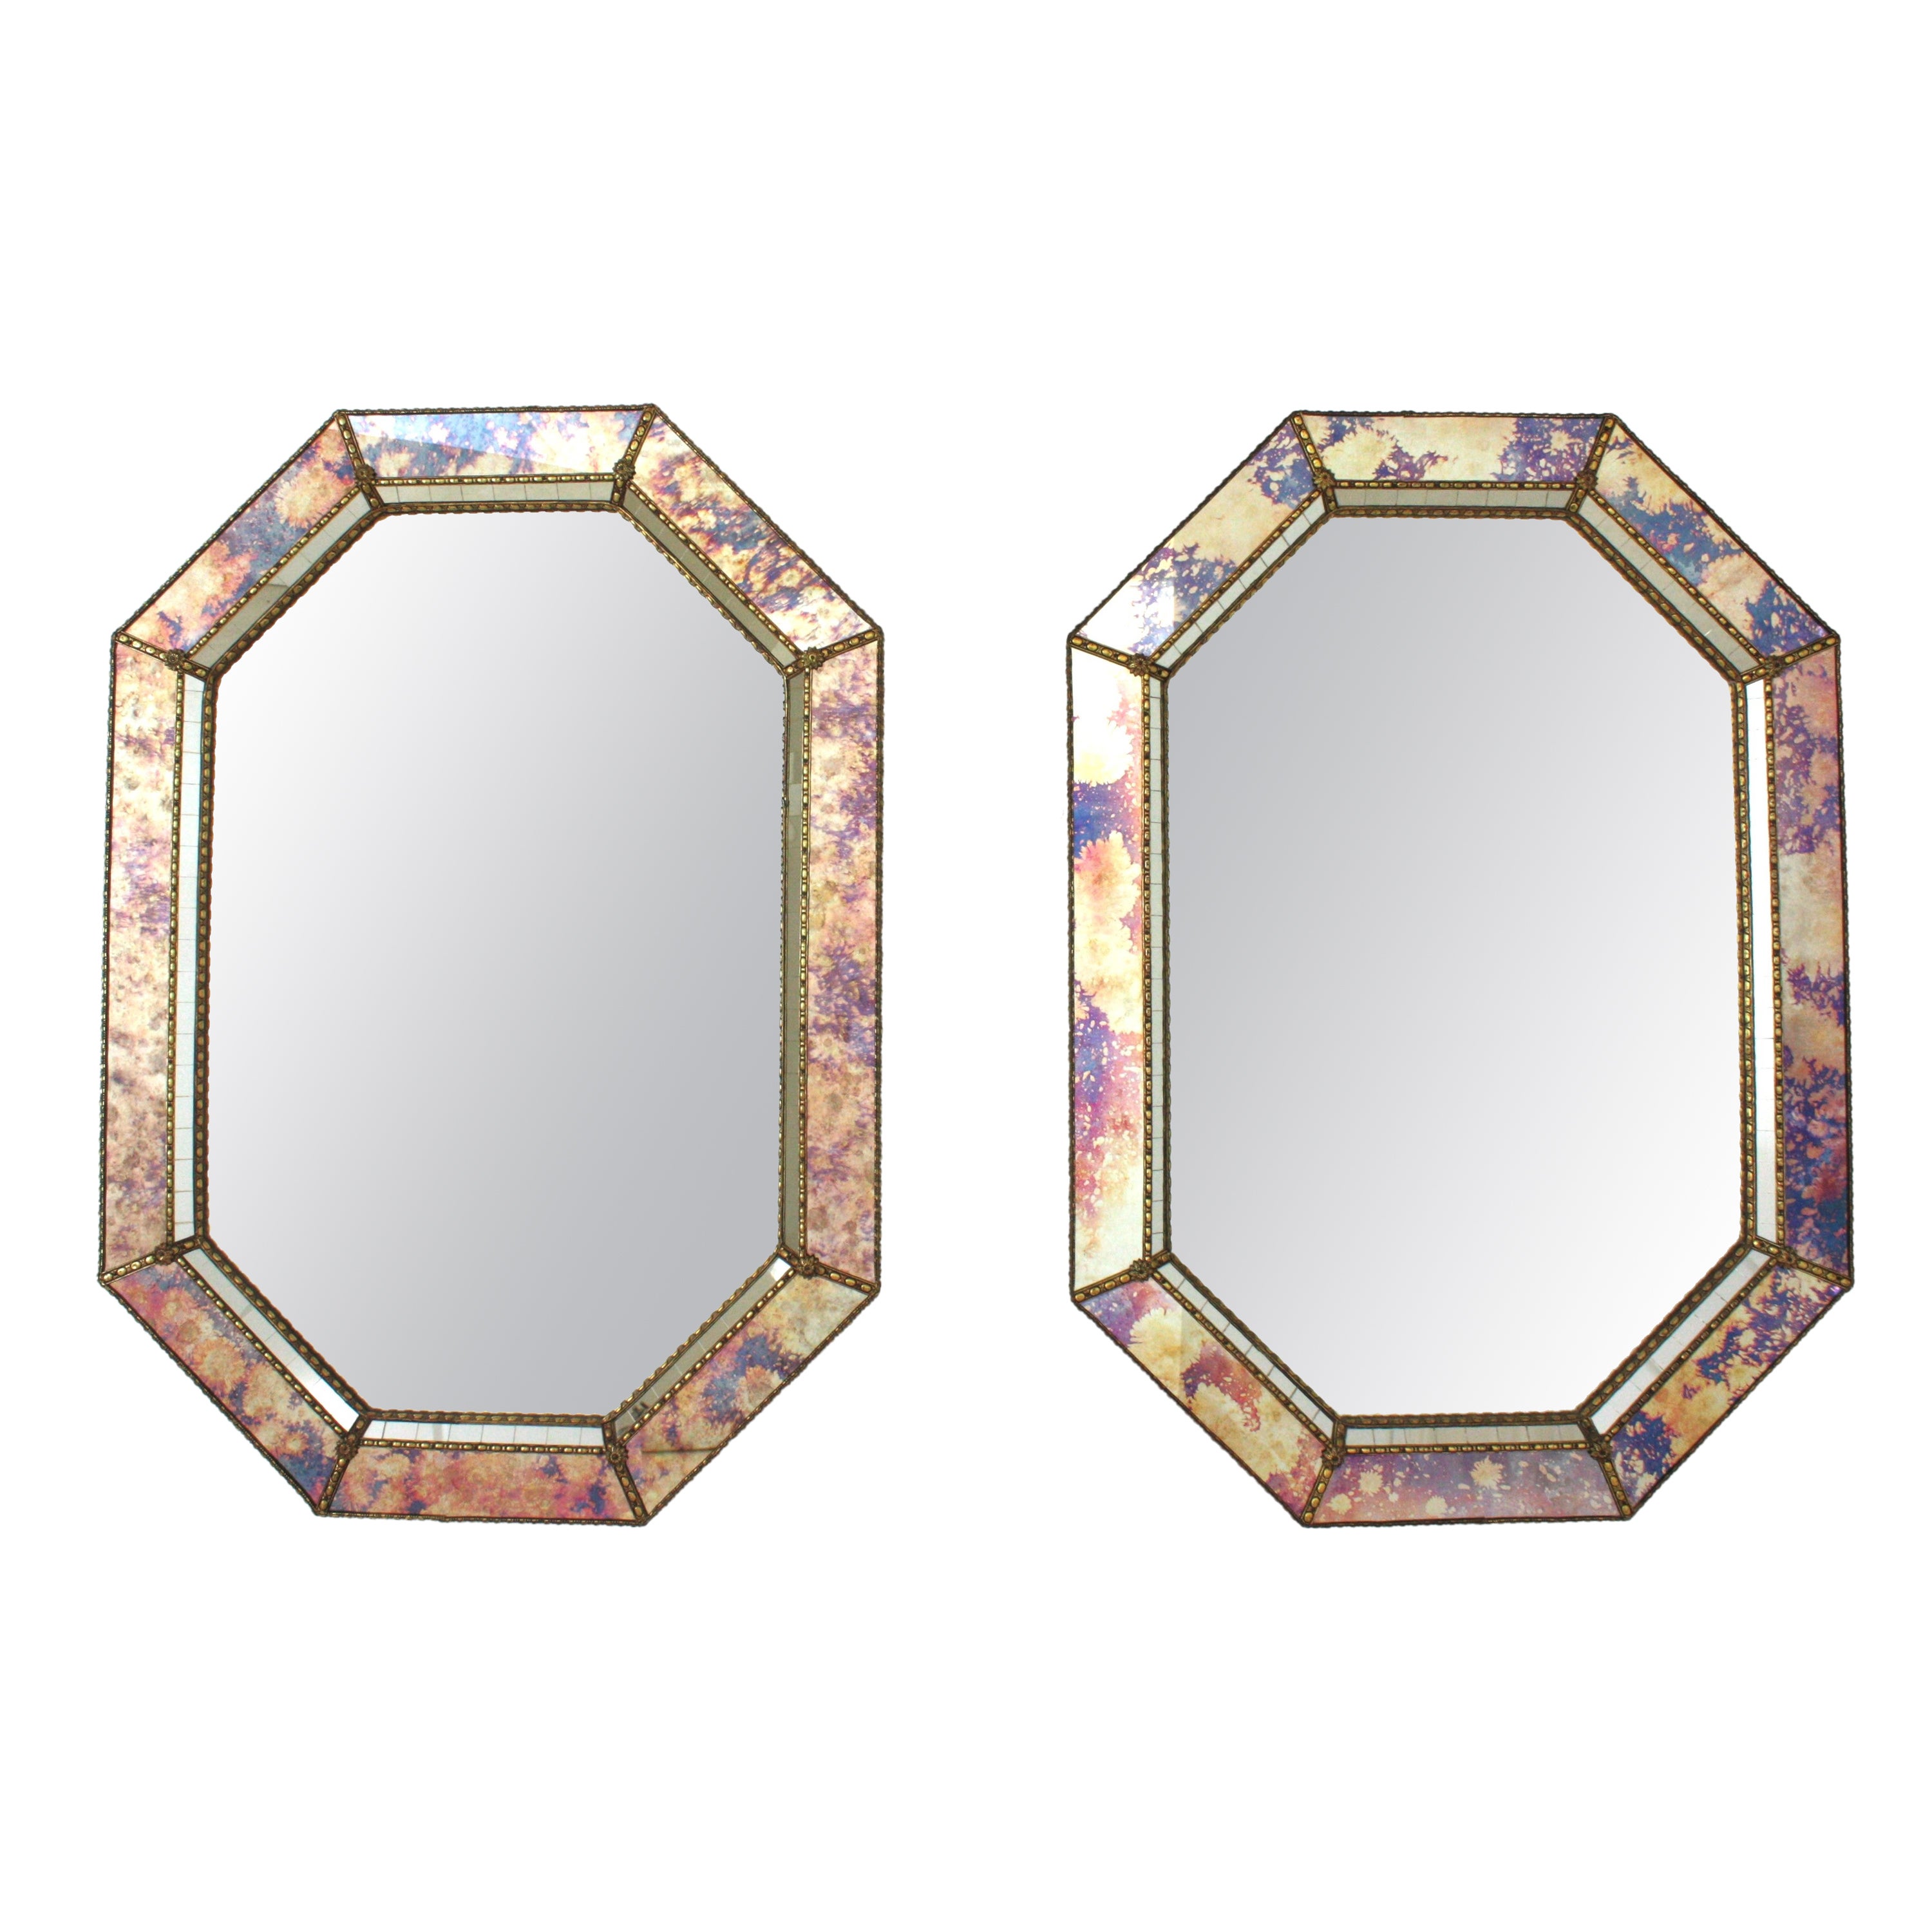 Achteckige Spiegel im venezianischen Stil mit rosa-violettem Glas und Messingdetails, Paar